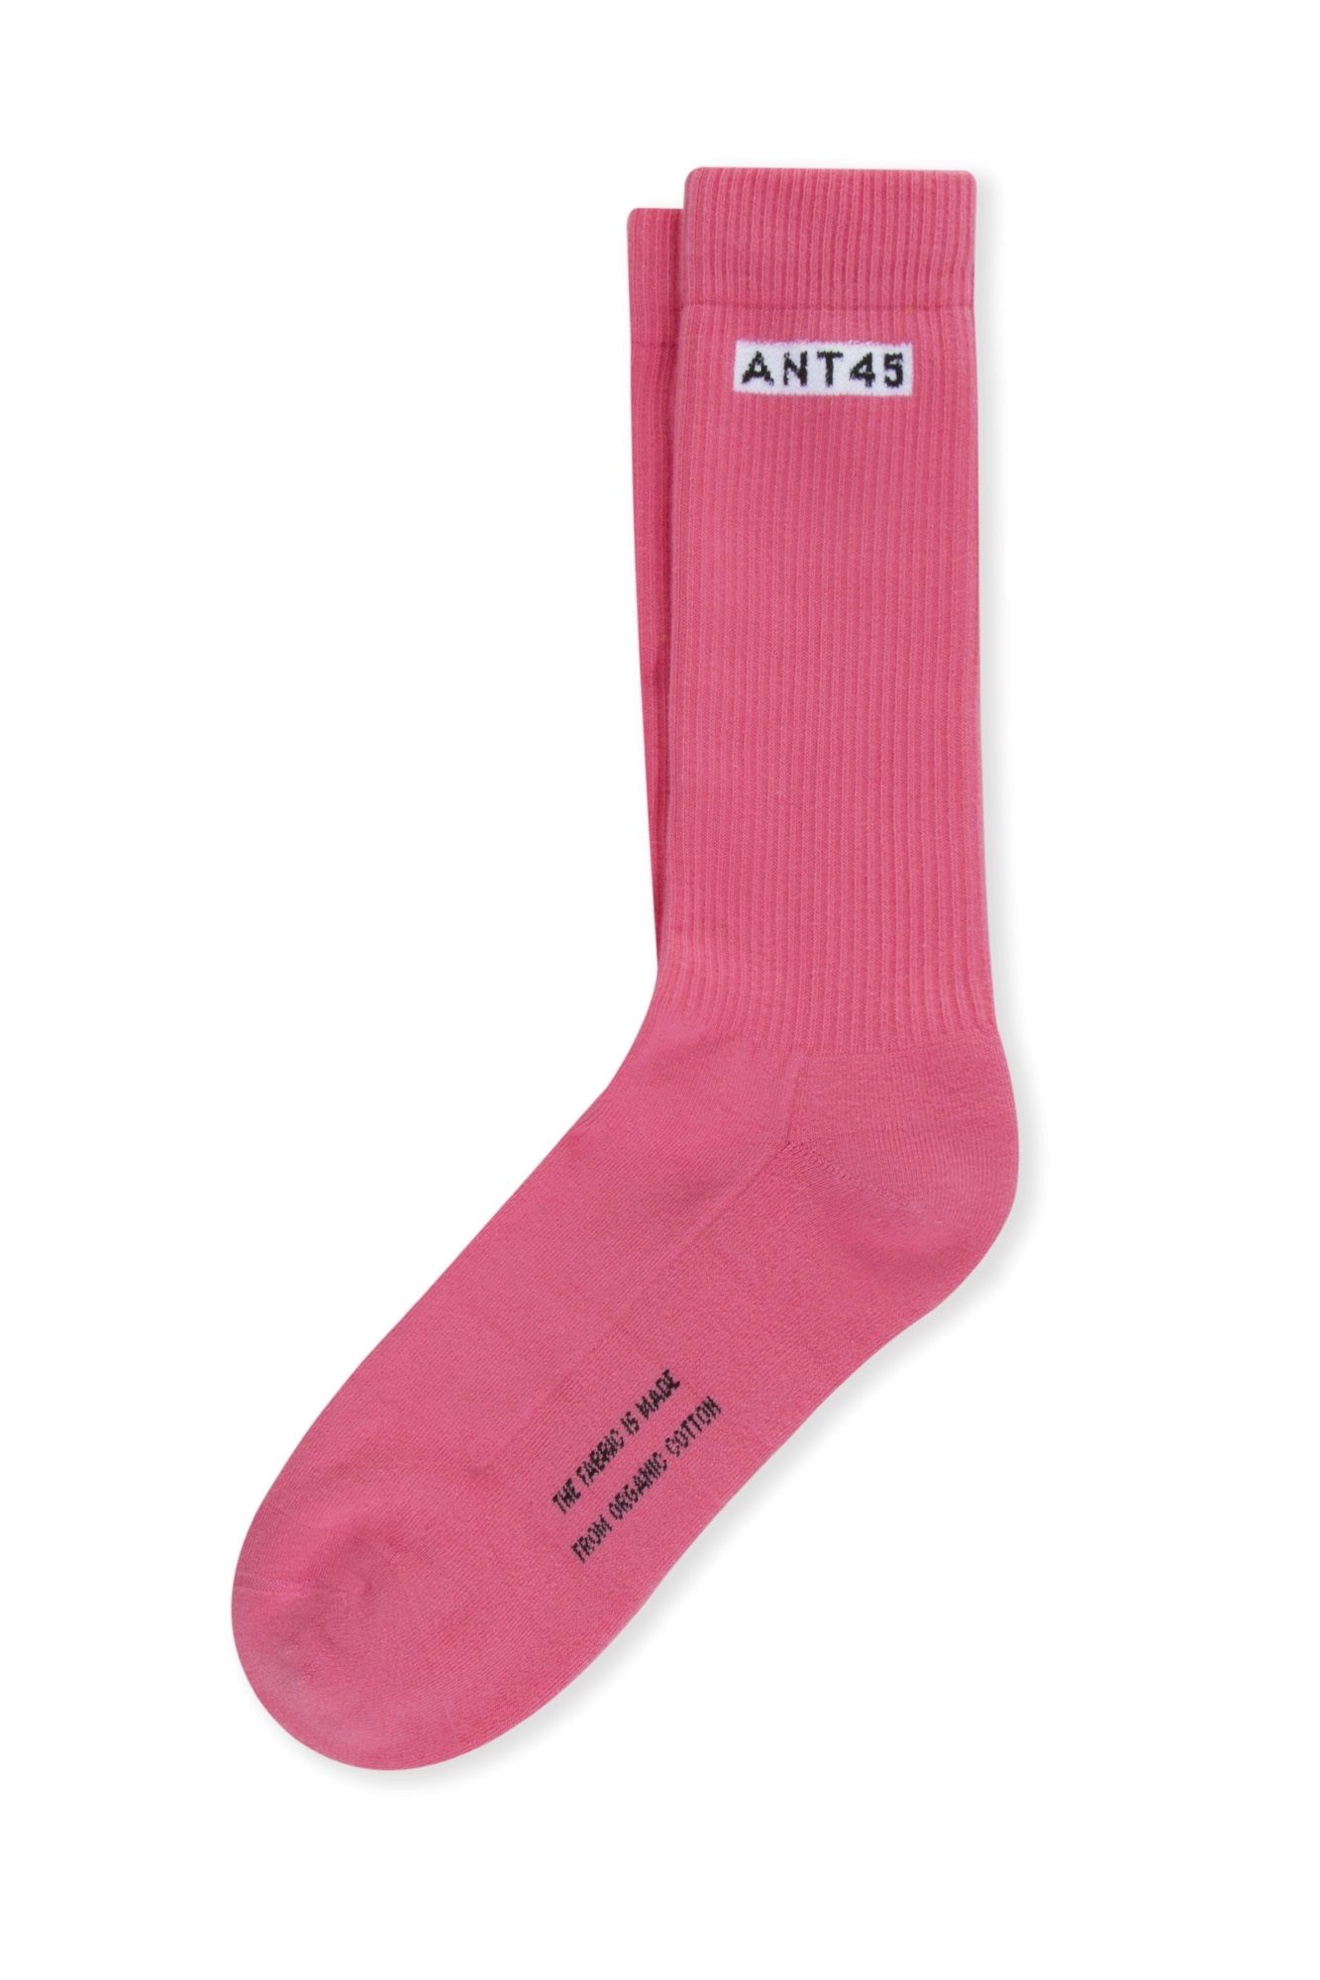 ANT45 Alicudi - Wollsocken mit Rippenstrick pink 36-41